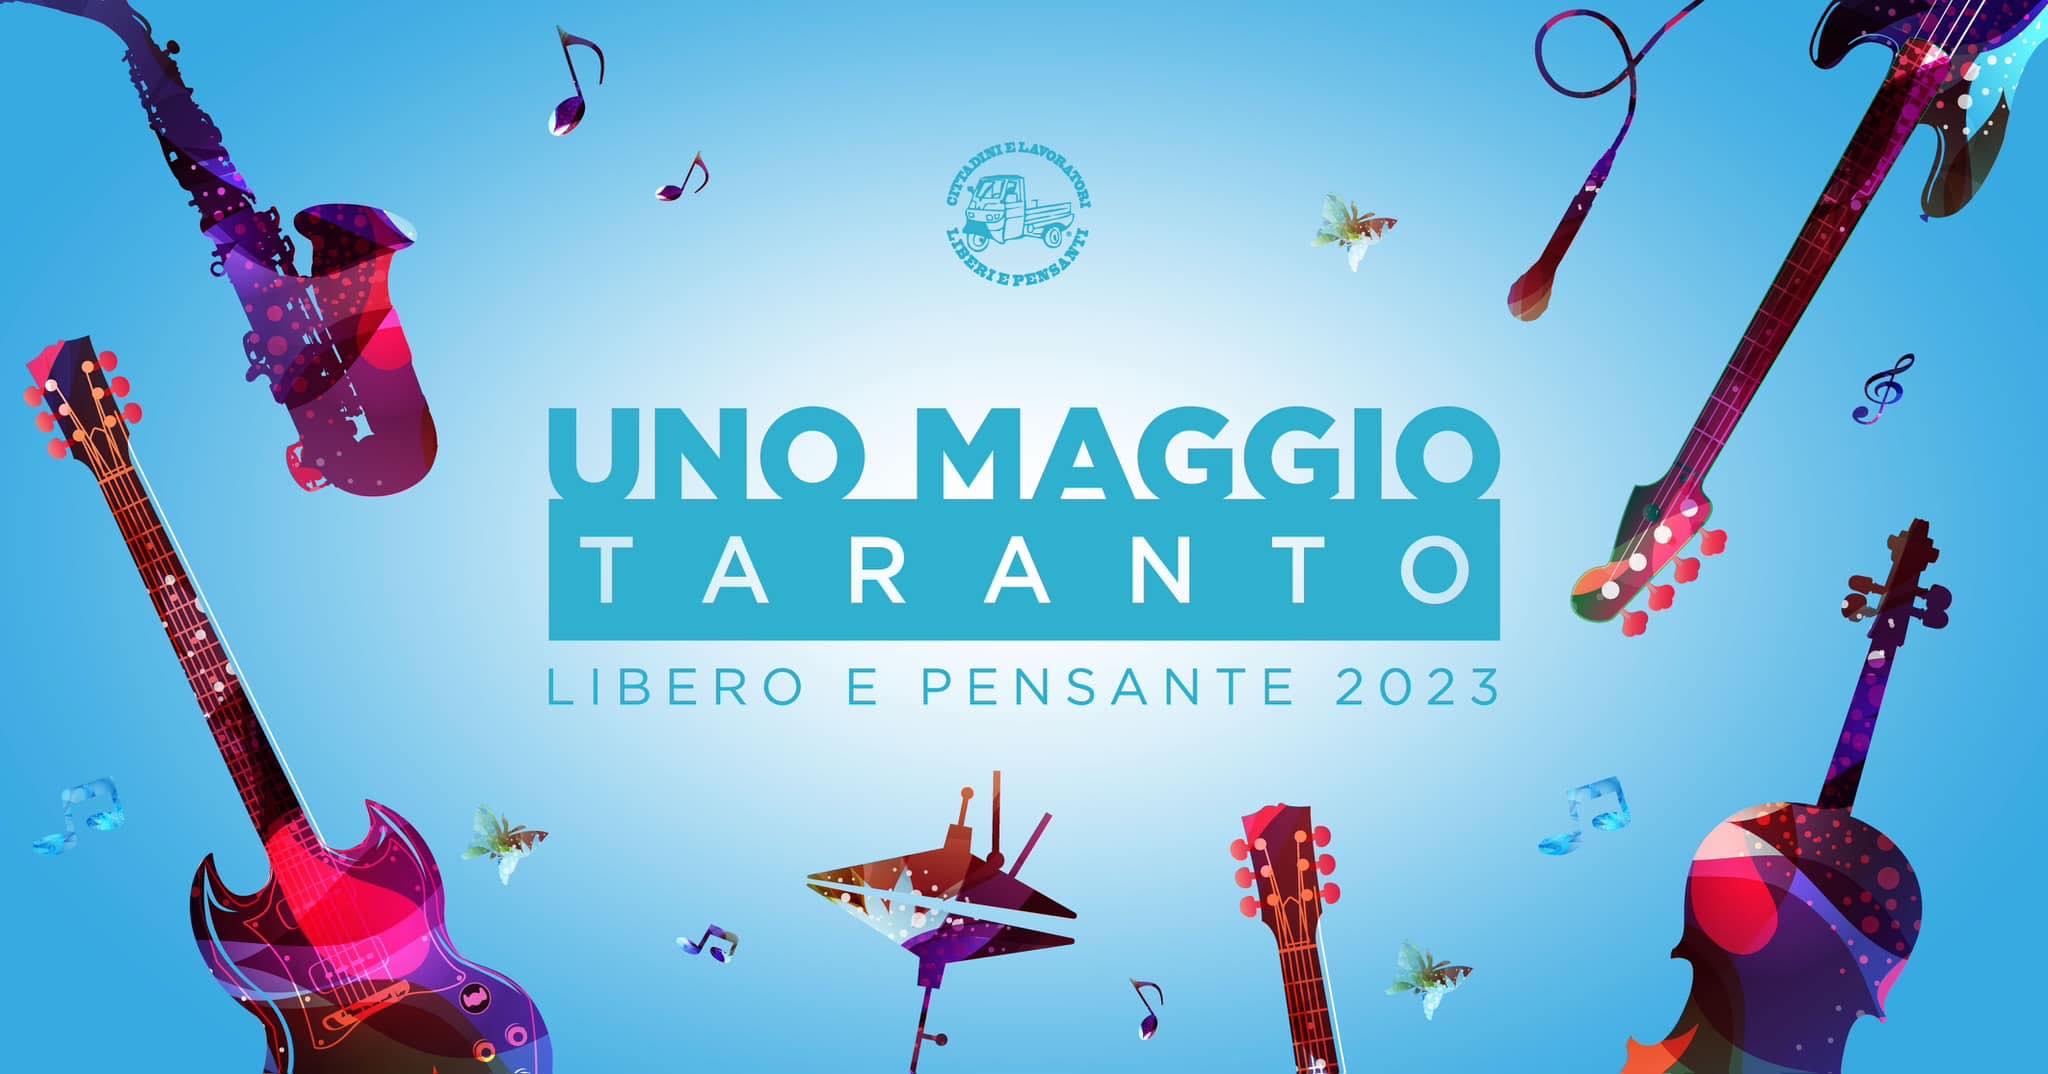 UNOMAGGIO TARANTO LIBERO E PENSANTE 2023